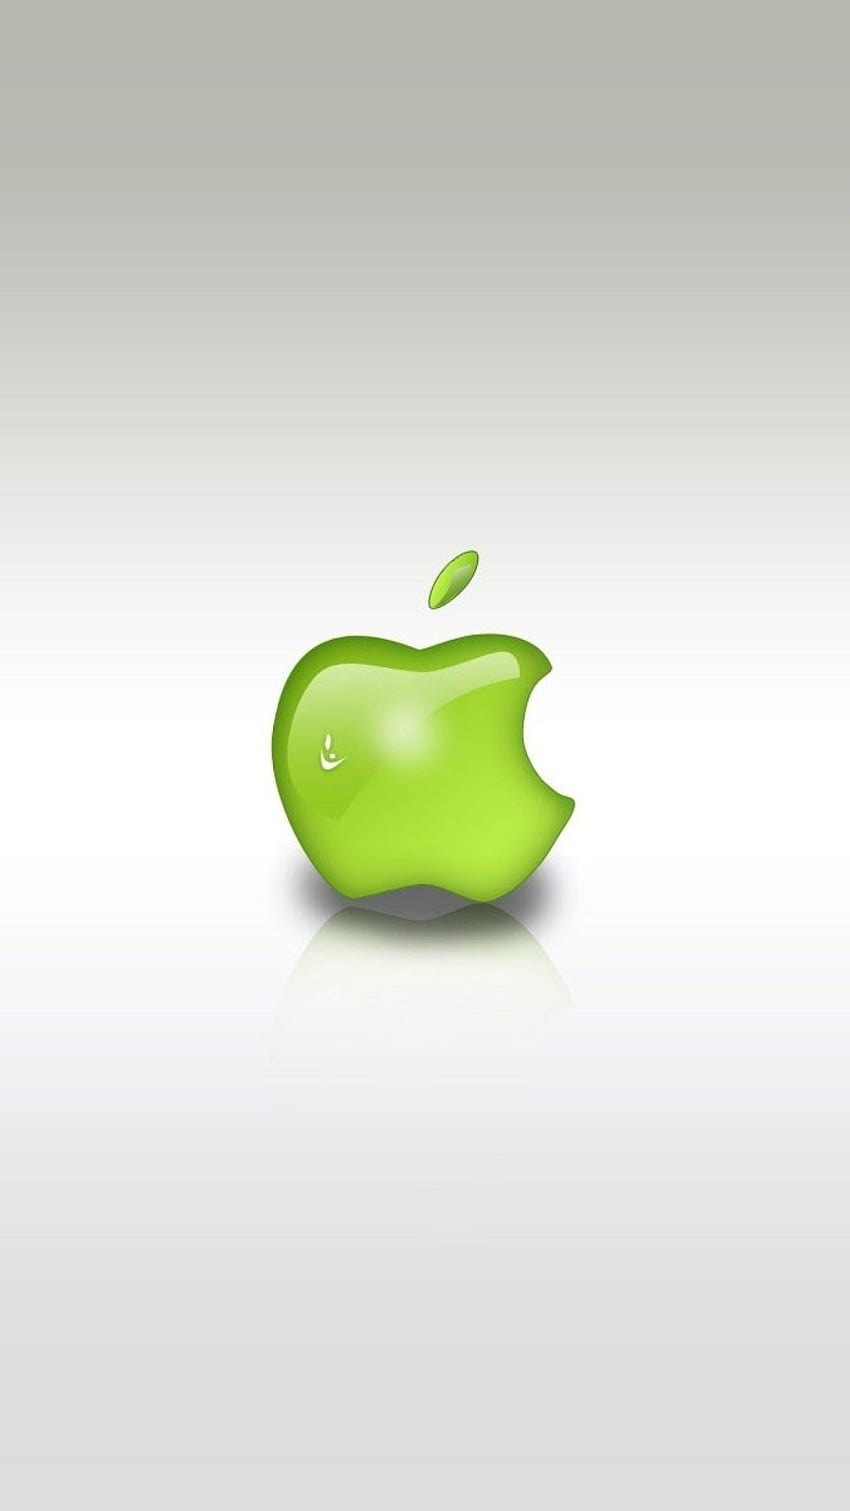 Green apple logo HD wallpapers | Pxfuel